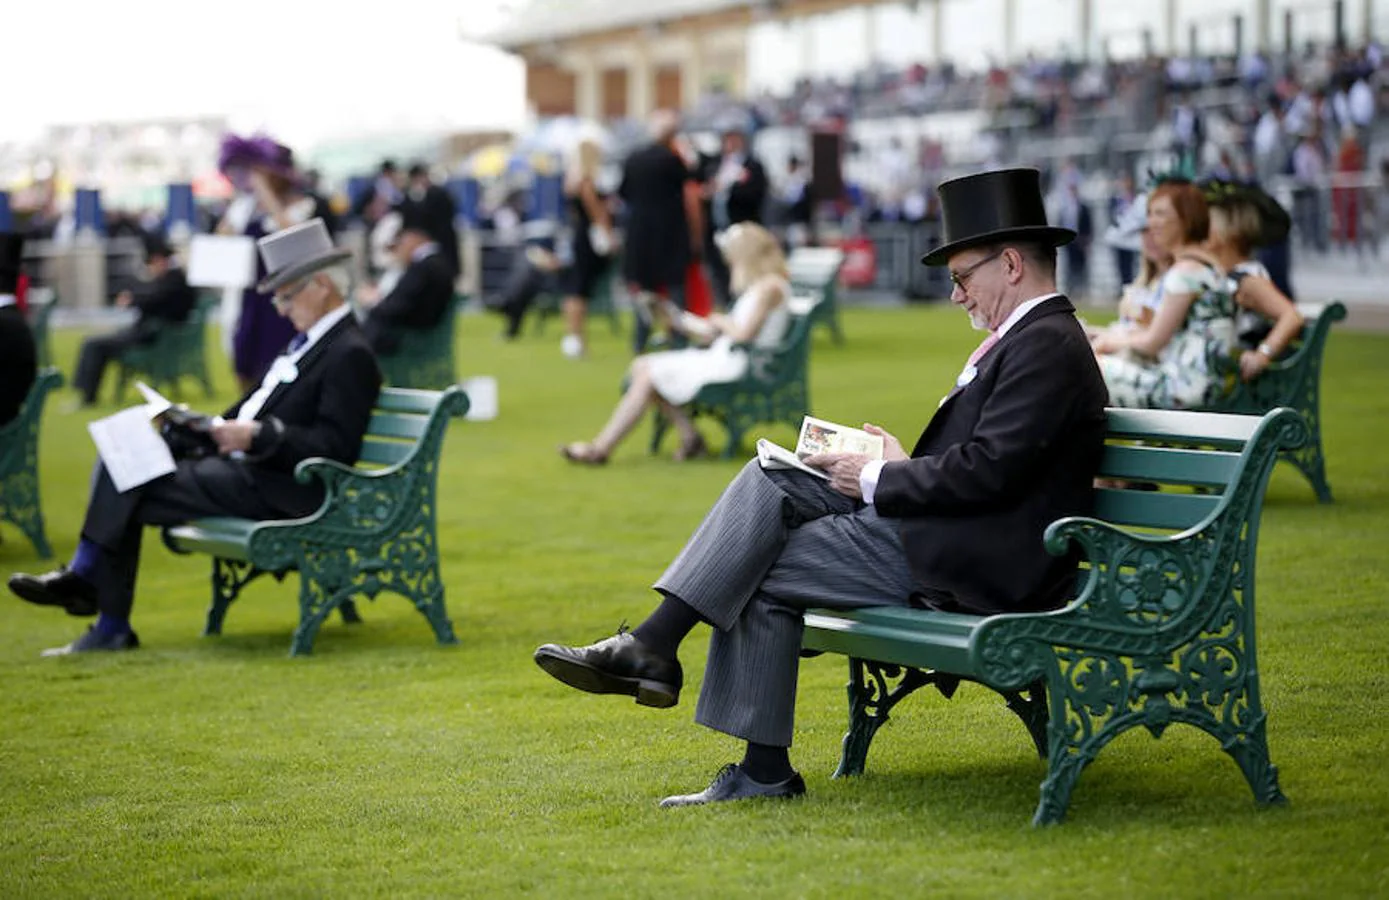 Un evento sinónimo de elegancia sartorial en el que los hombres están obligados a lucir traje de chaqué negro o gris incluyendo la corbata, el chaleco y el sombrero de copa en todo momento